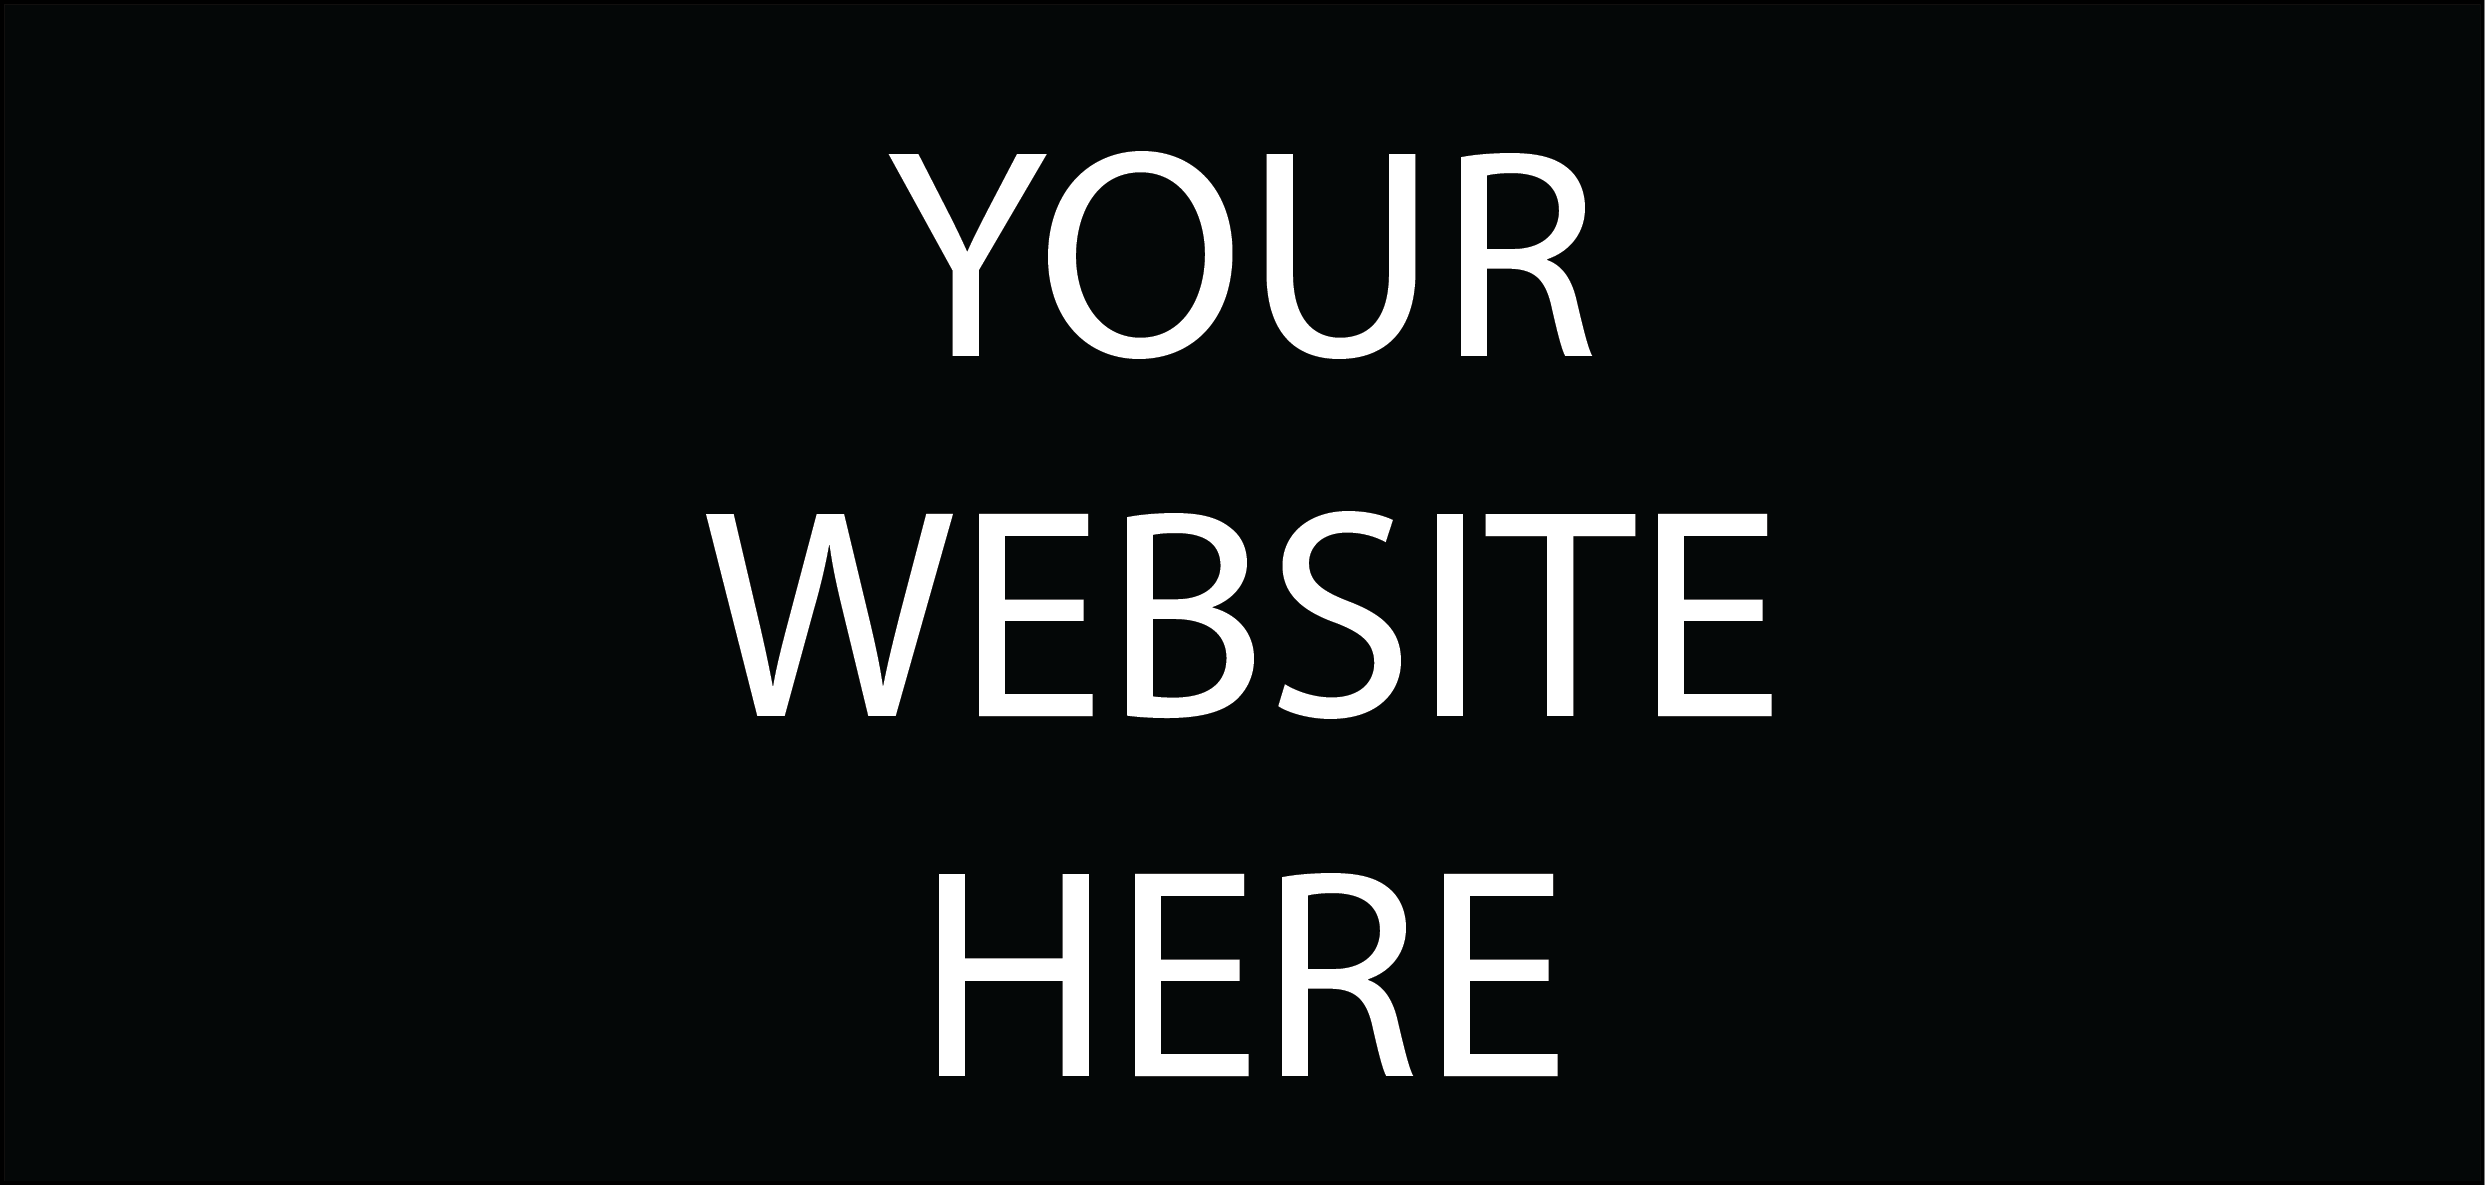 Your WEBSITE HERE